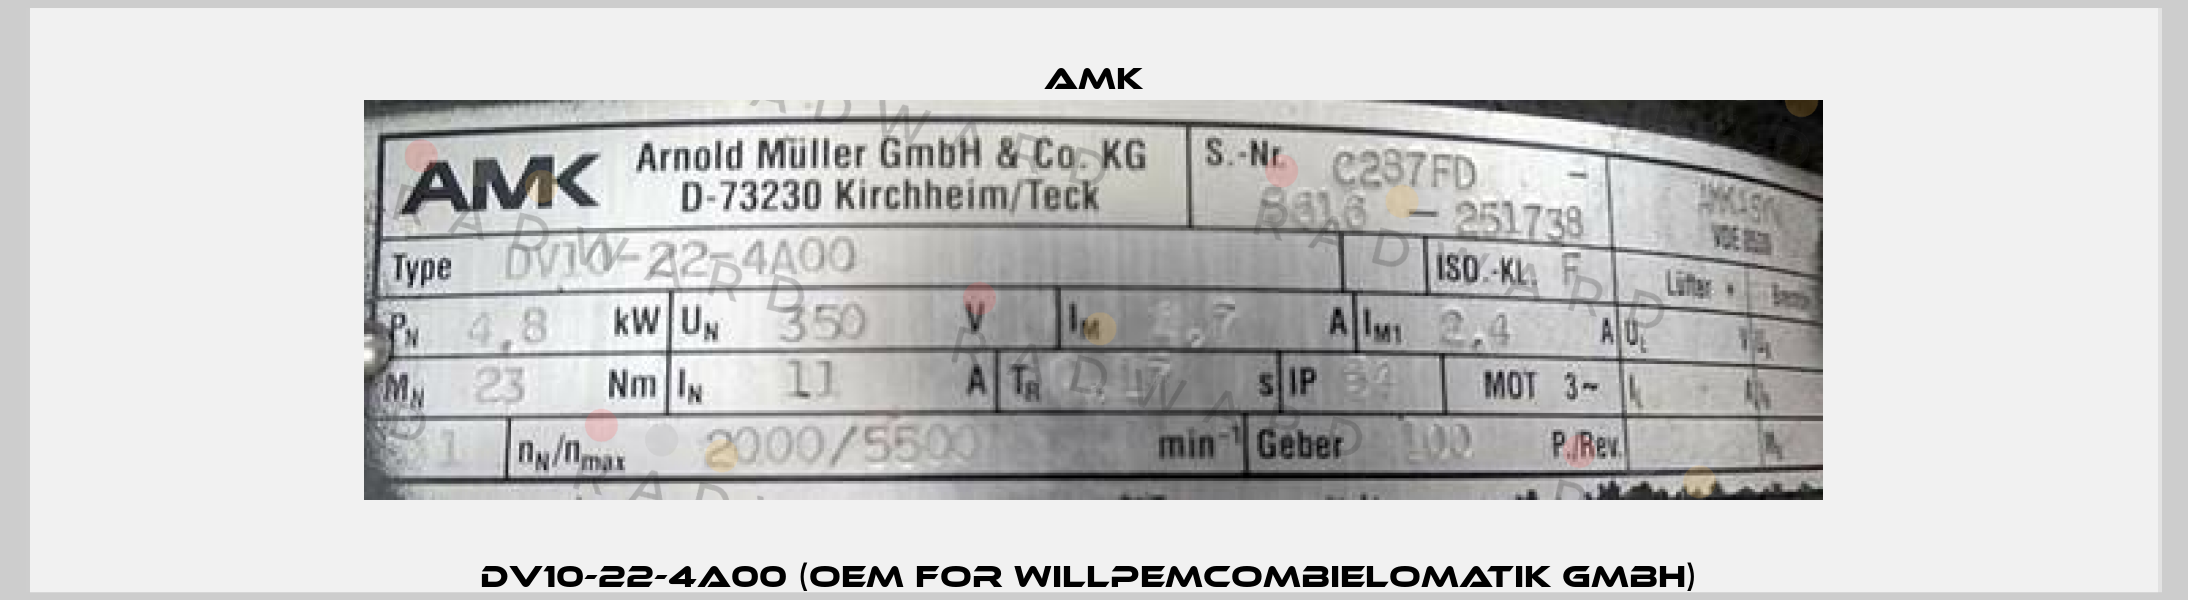 DV10-22-4A00 (OEM for WillPemcomBielomatik GmbH)  AMK